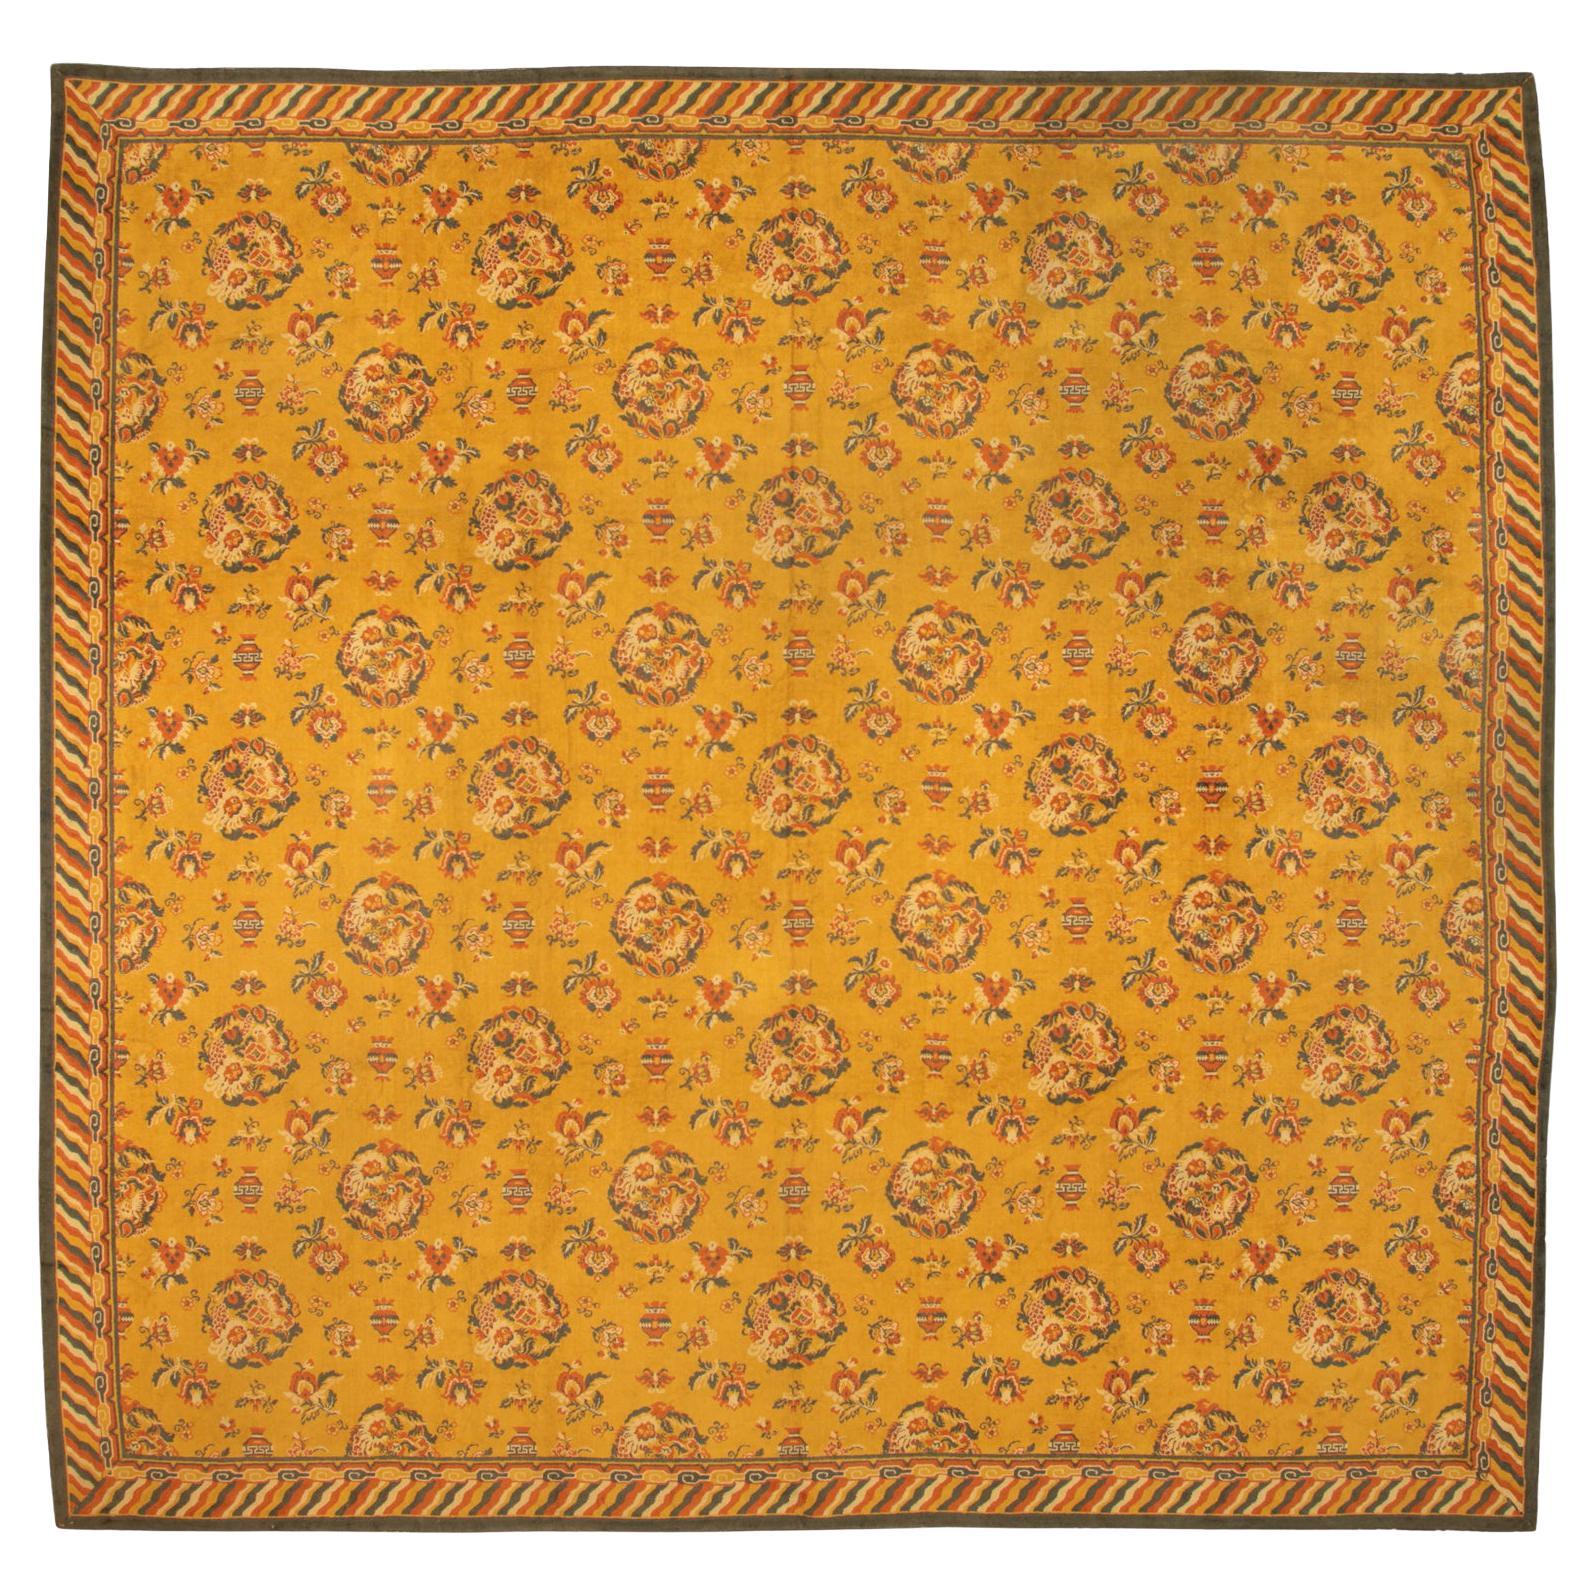 Chinesische antike Textil-Samt-Baumwoll-Kollektion, ca. 1940